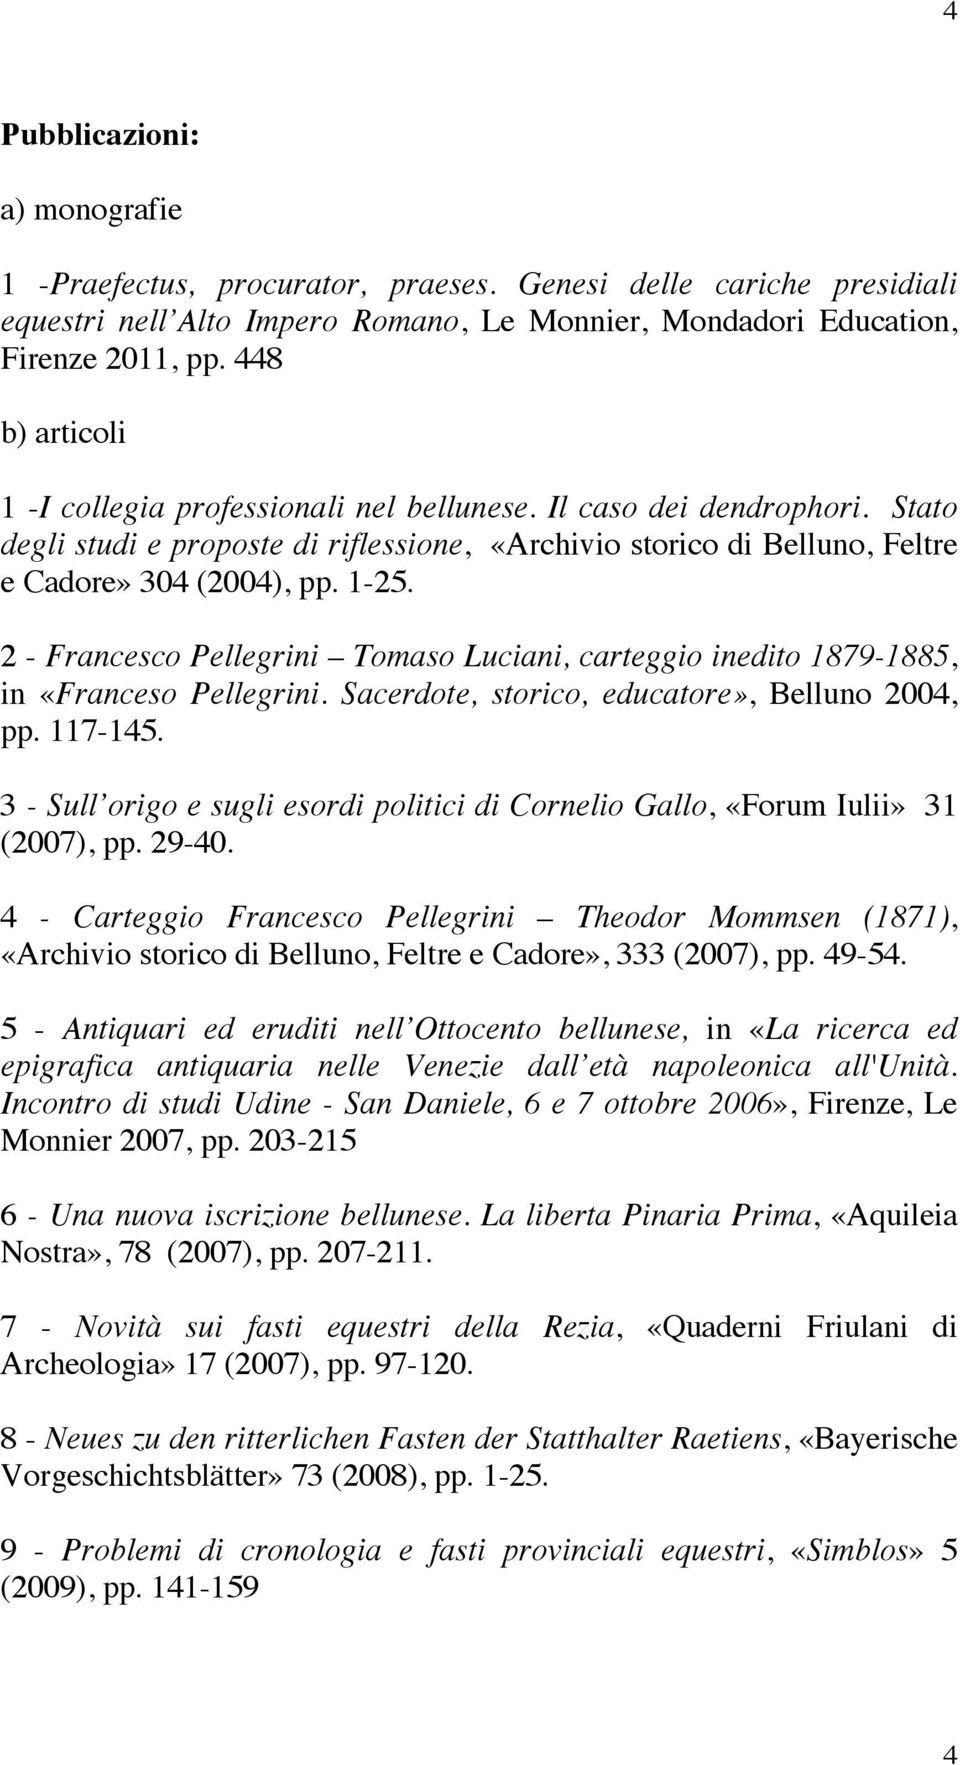 2 - Francesco Pellegrini Tomaso Luciani, carteggio inedito 1879-1885, in «Franceso Pellegrini. Sacerdote, storico, educatore», Belluno 2004, pp. 117-145.